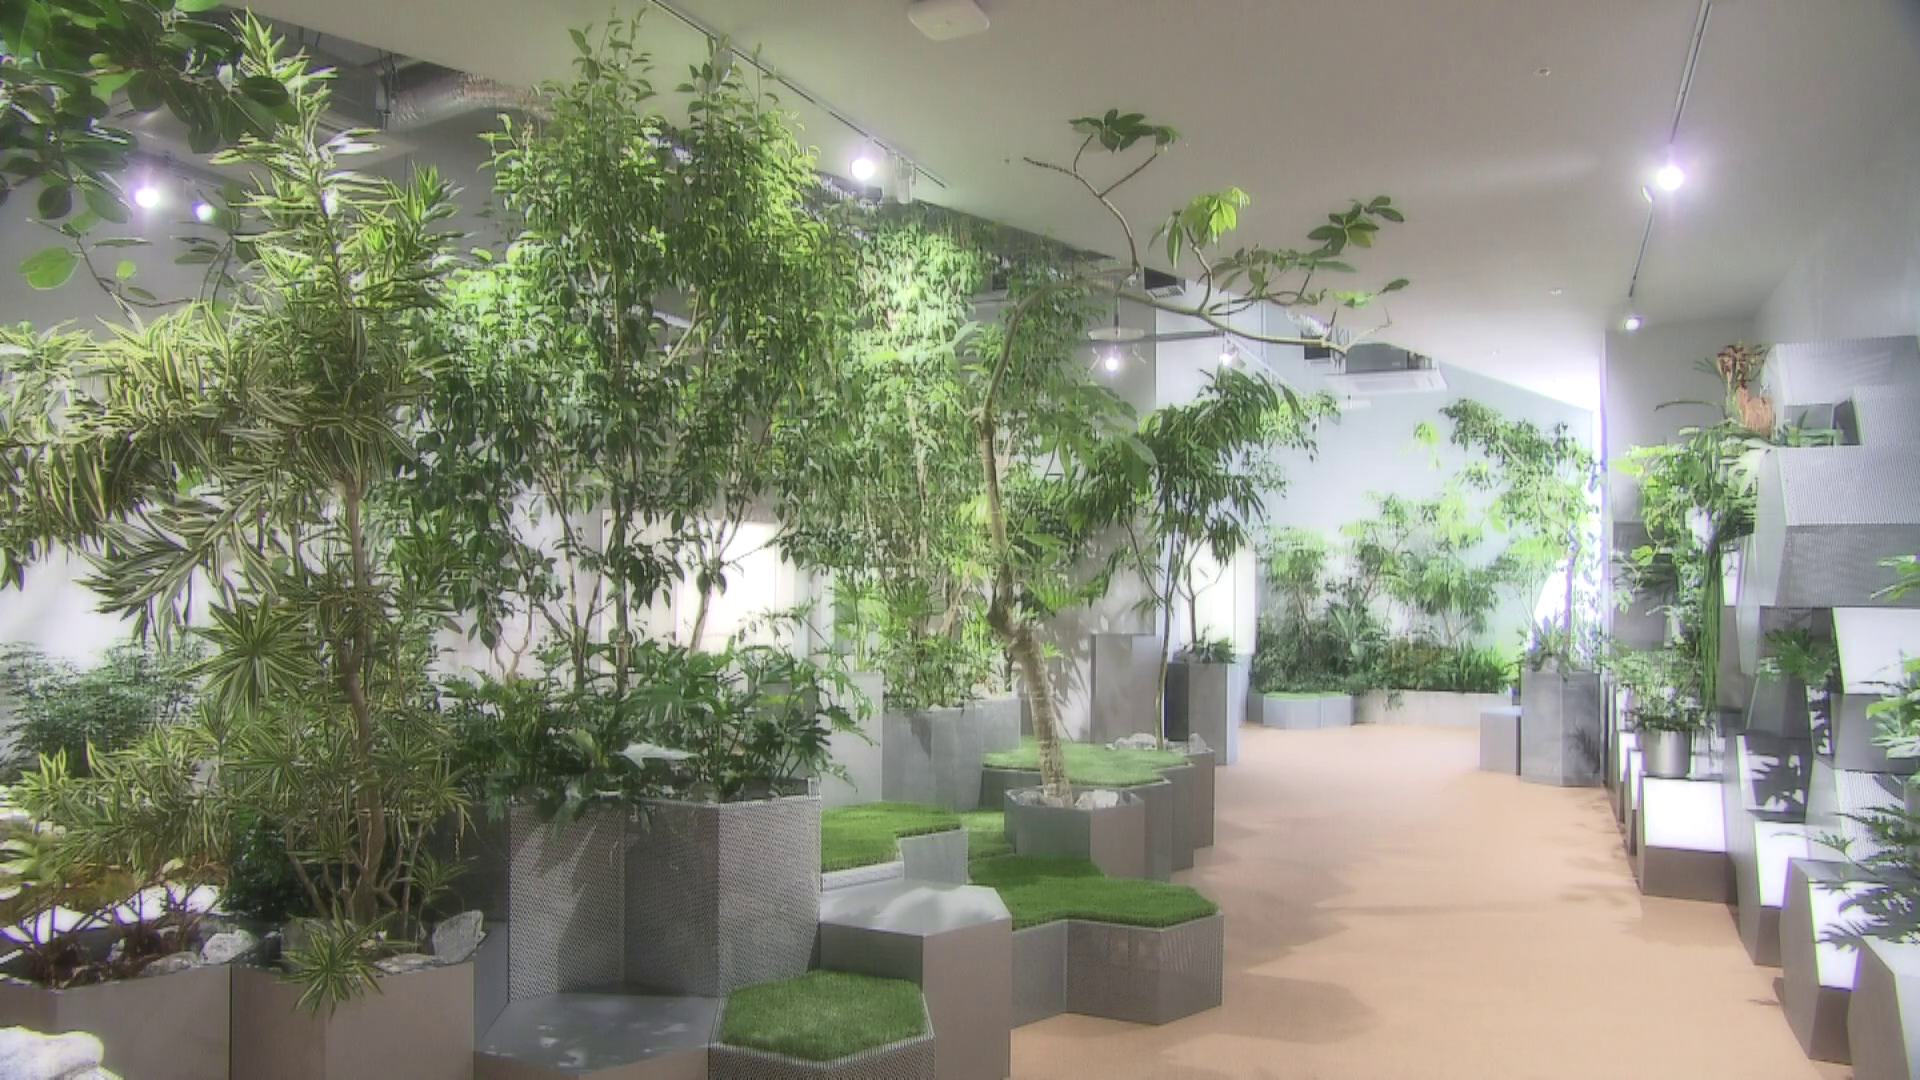 熱帯の植物が生い茂る都会のオアシス「グリーンルーム」